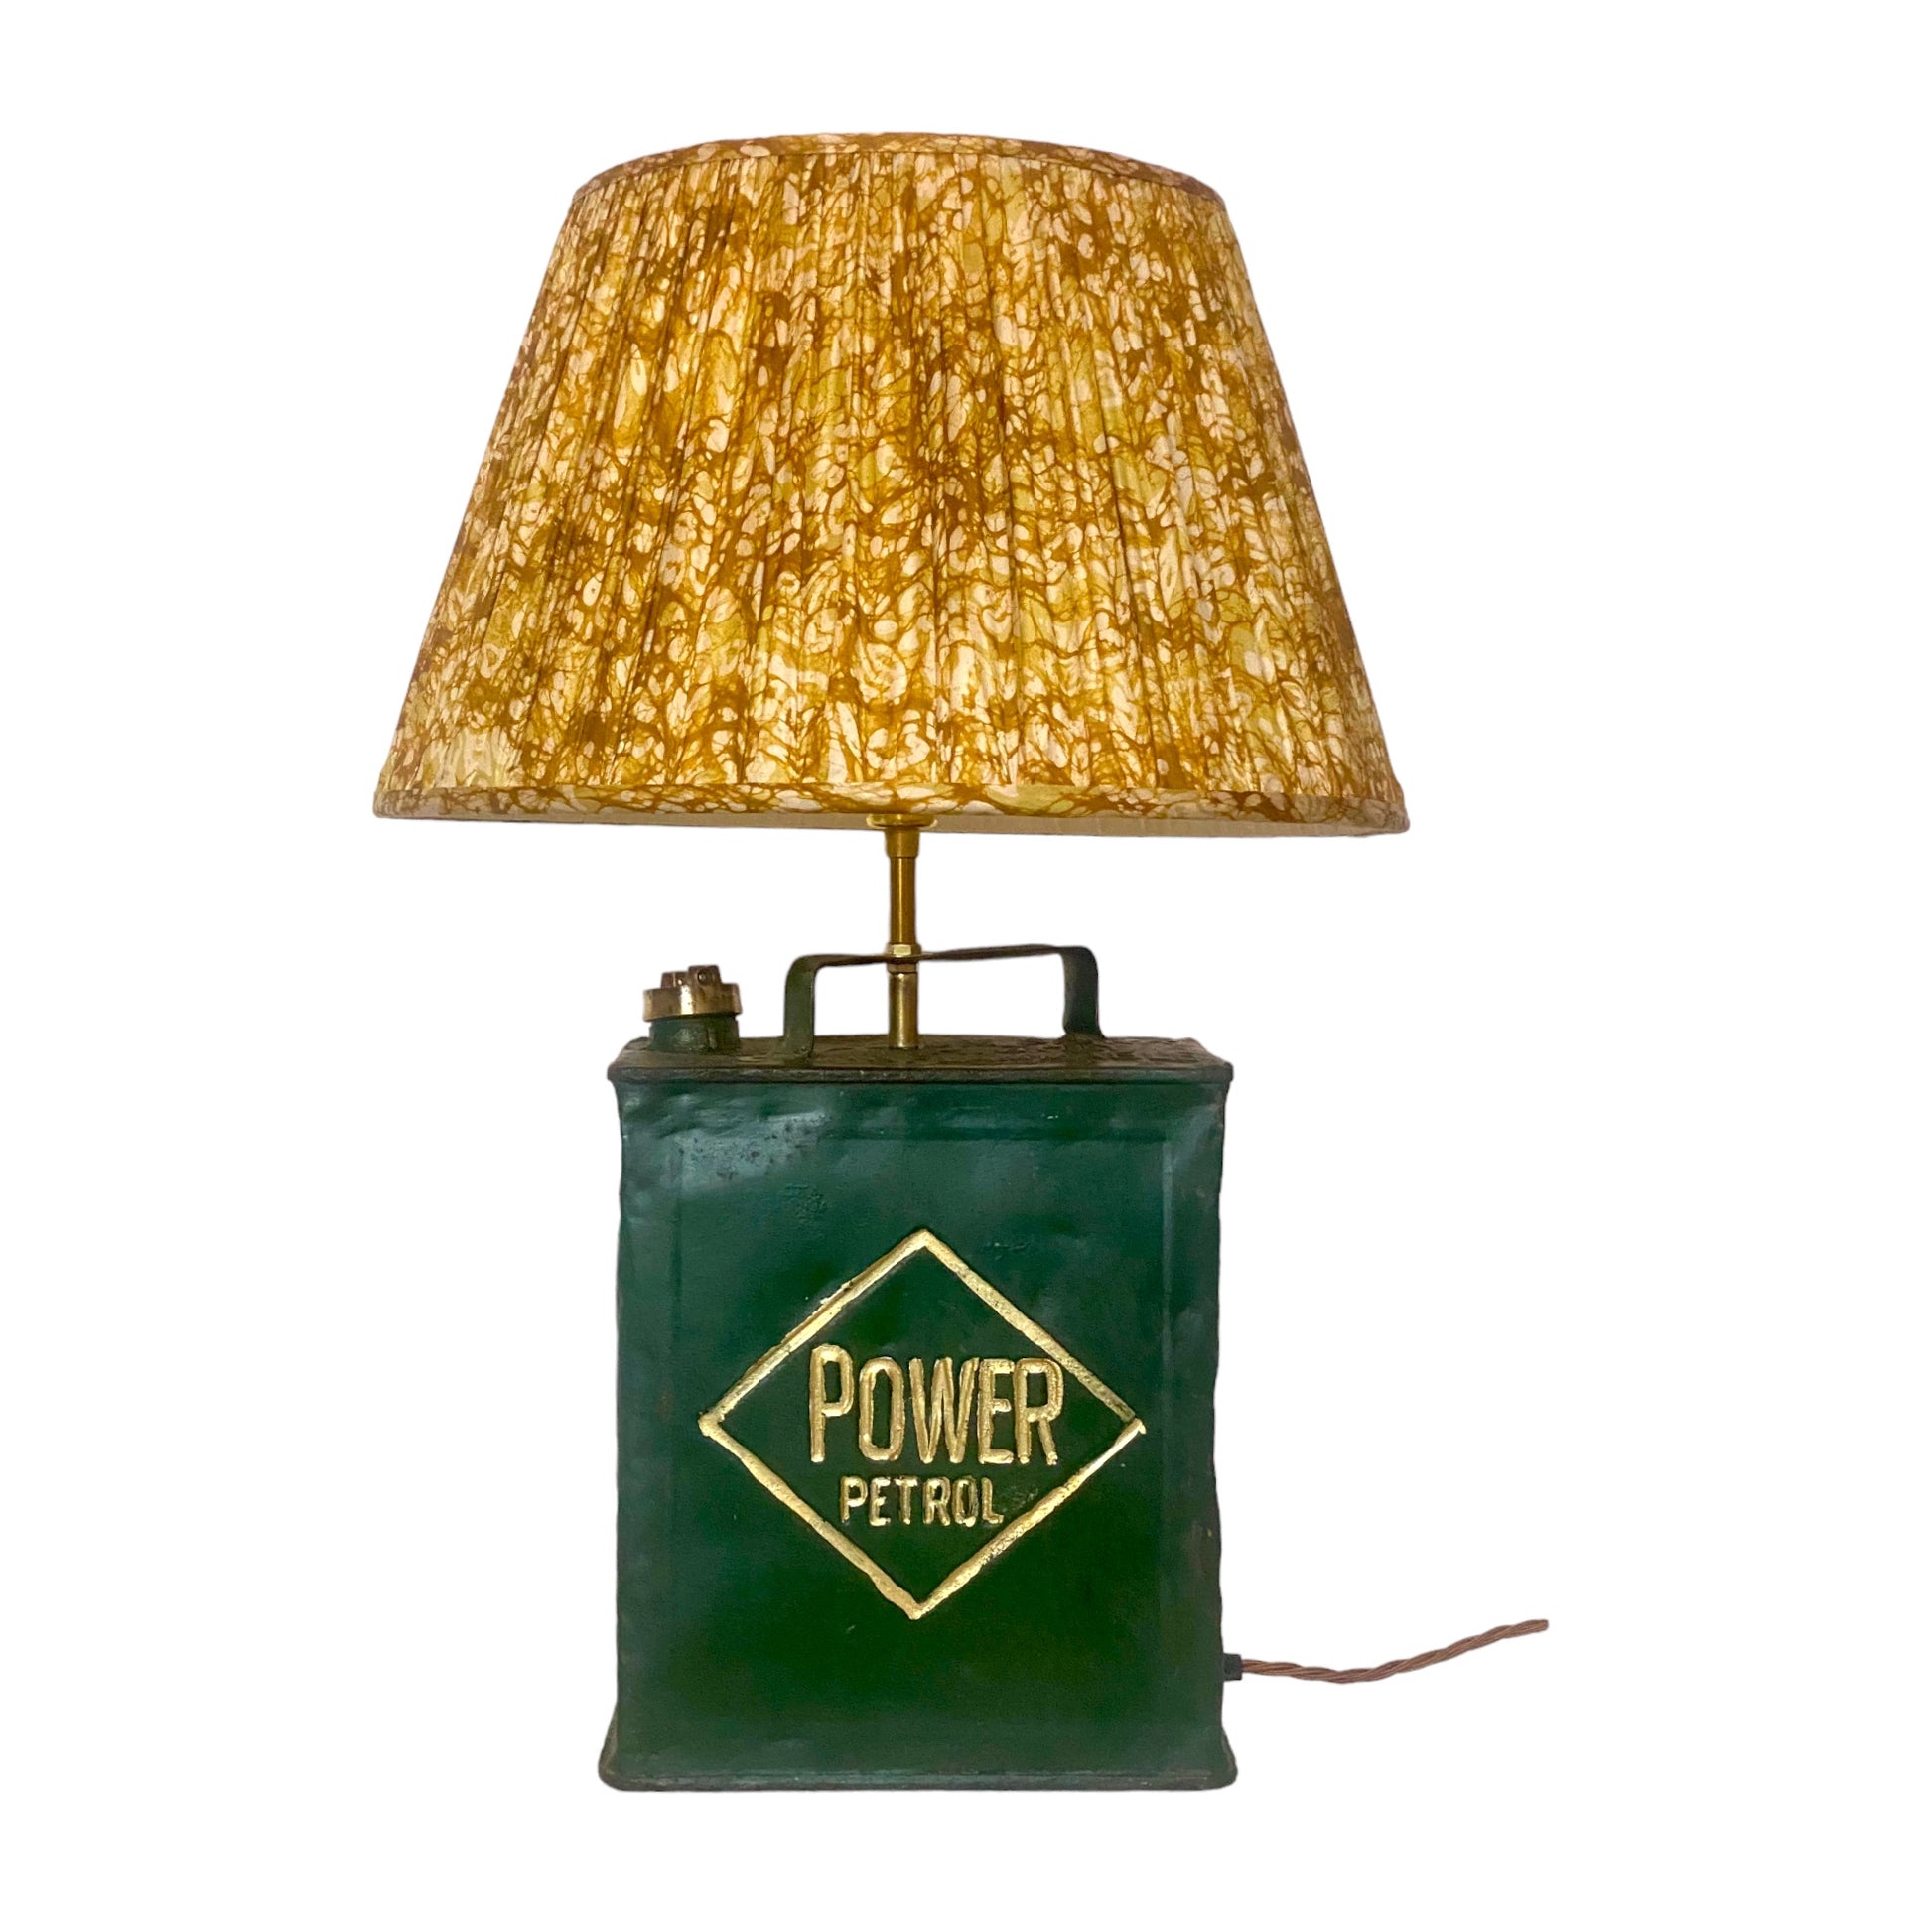 Yellow and brown batik lampshade on Petrol lamp